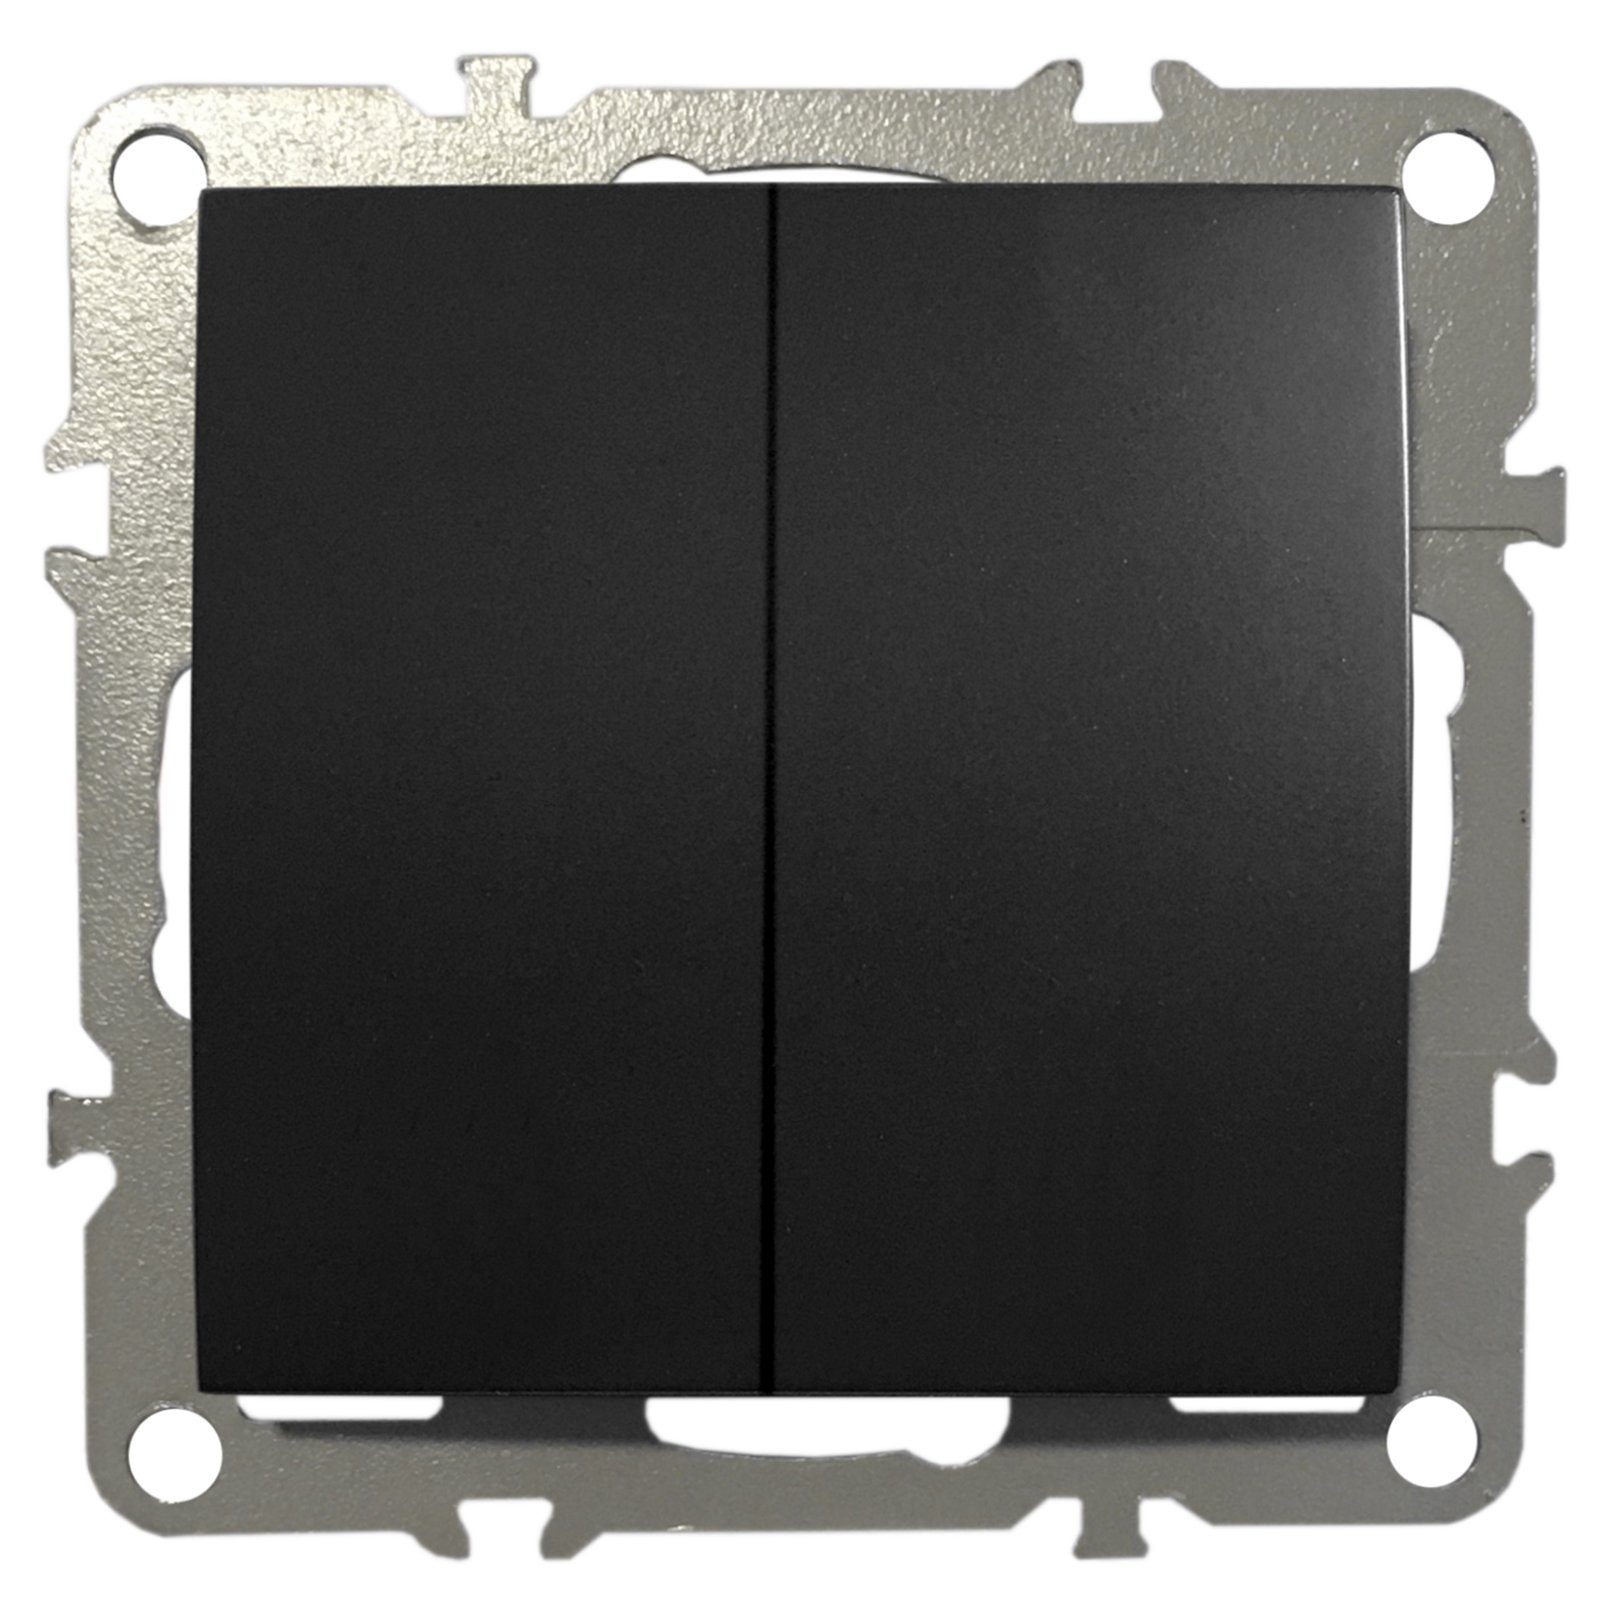 ADELID Schalter, 2-Fach Schalter Lichtschalter Doppel-Schalter Serienschalter Unterputz 220-250V 10A Schwarz Matt